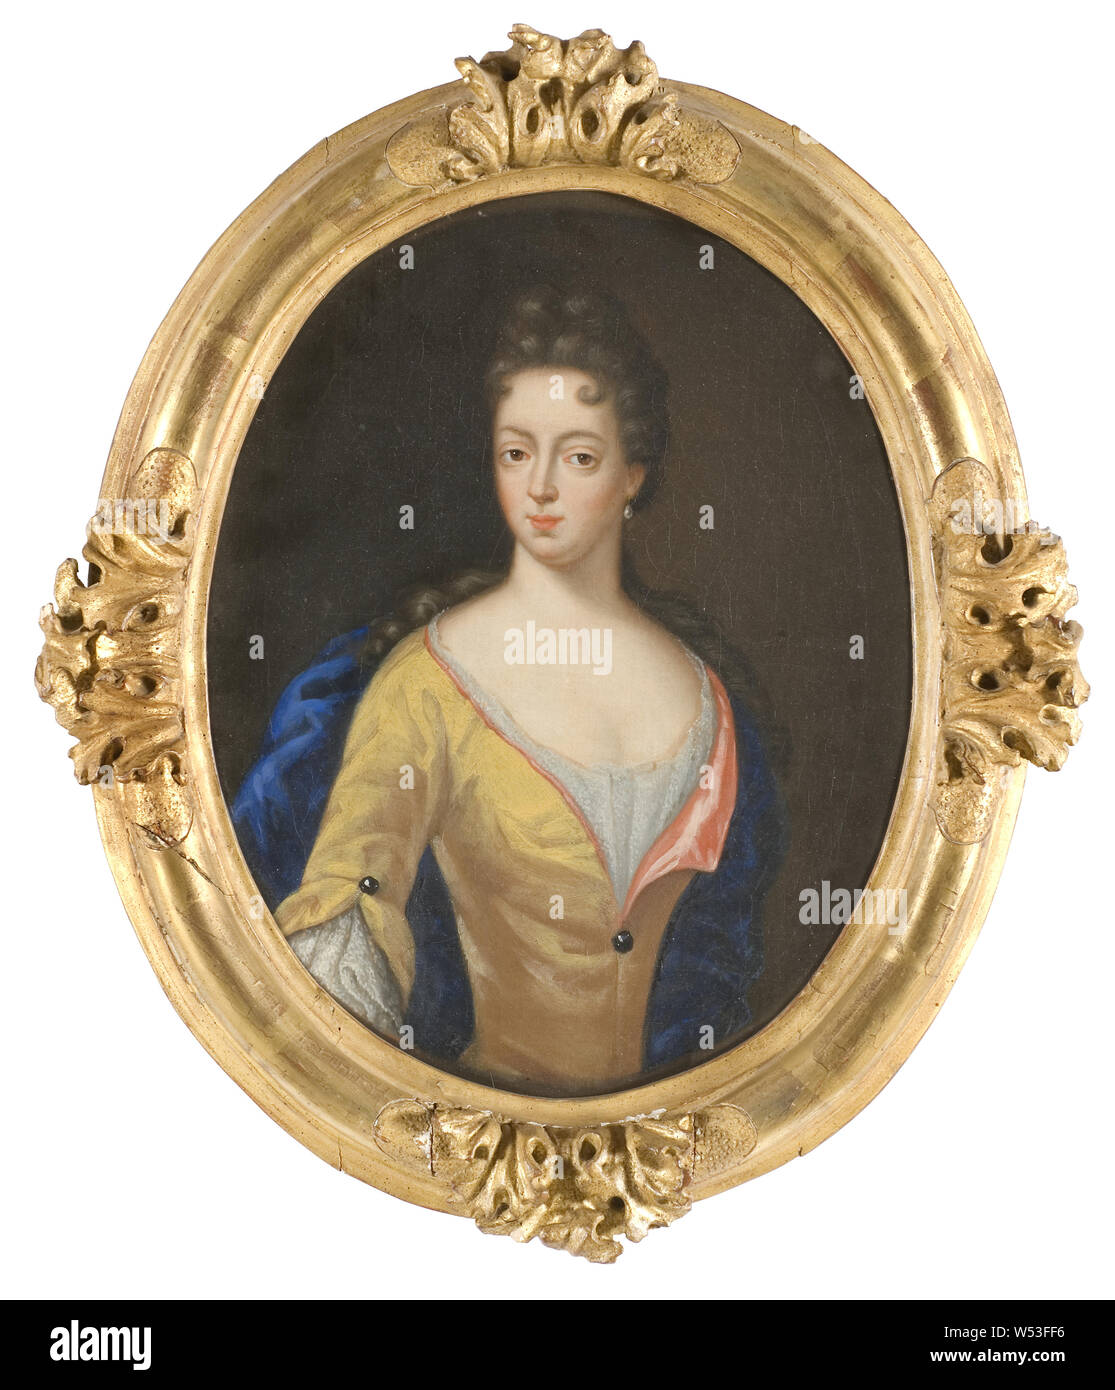 Mari nero, Maria nero, 1647-1701, von von Osten Sacken, pittura, 1703, olio su tela, altezza 44 cm (17,3 pollici), Larghezza 35 cm (13,7 pollici) Foto Stock